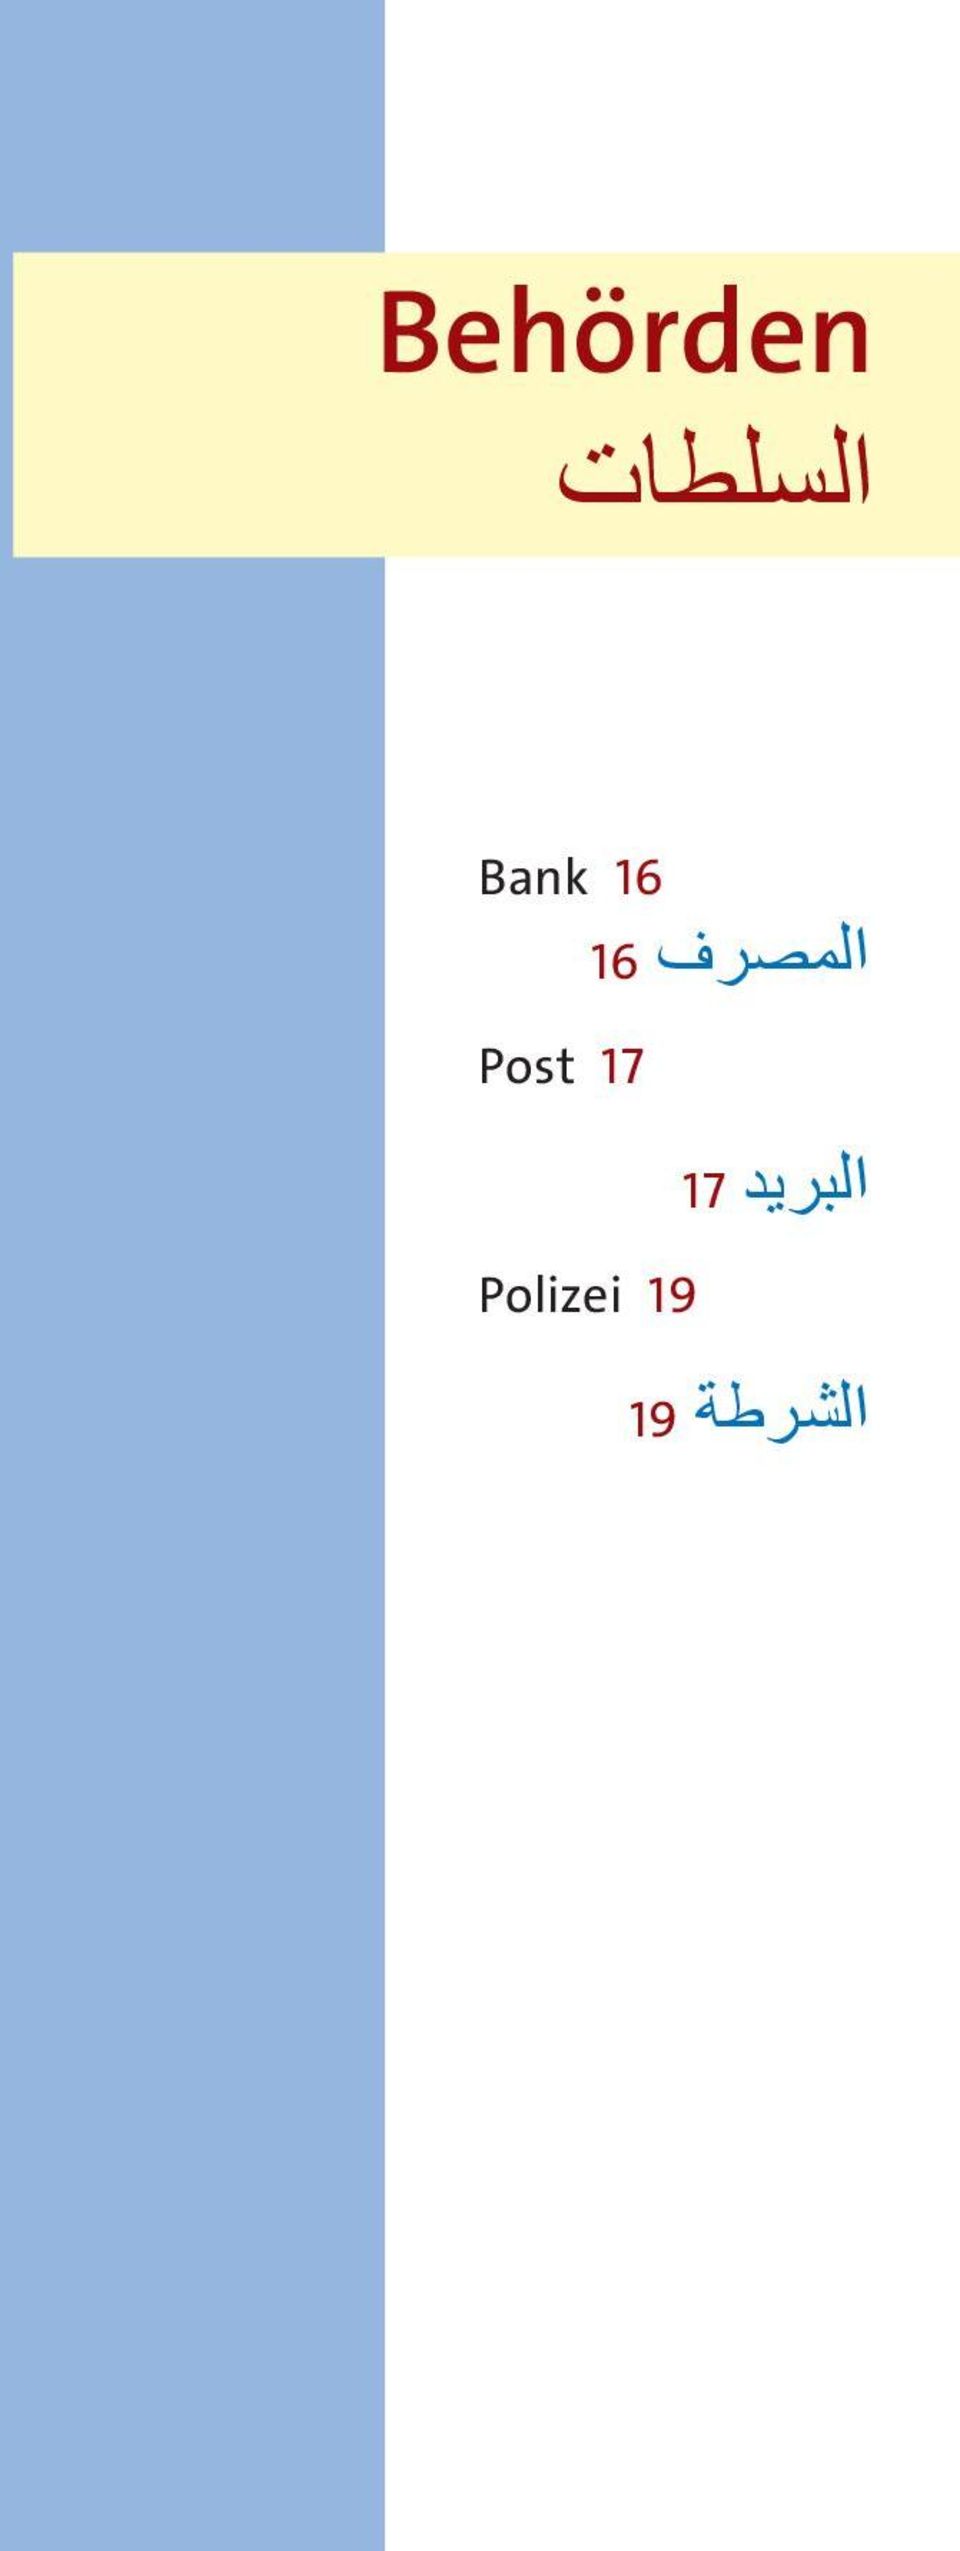 Polizei 19 المصرف